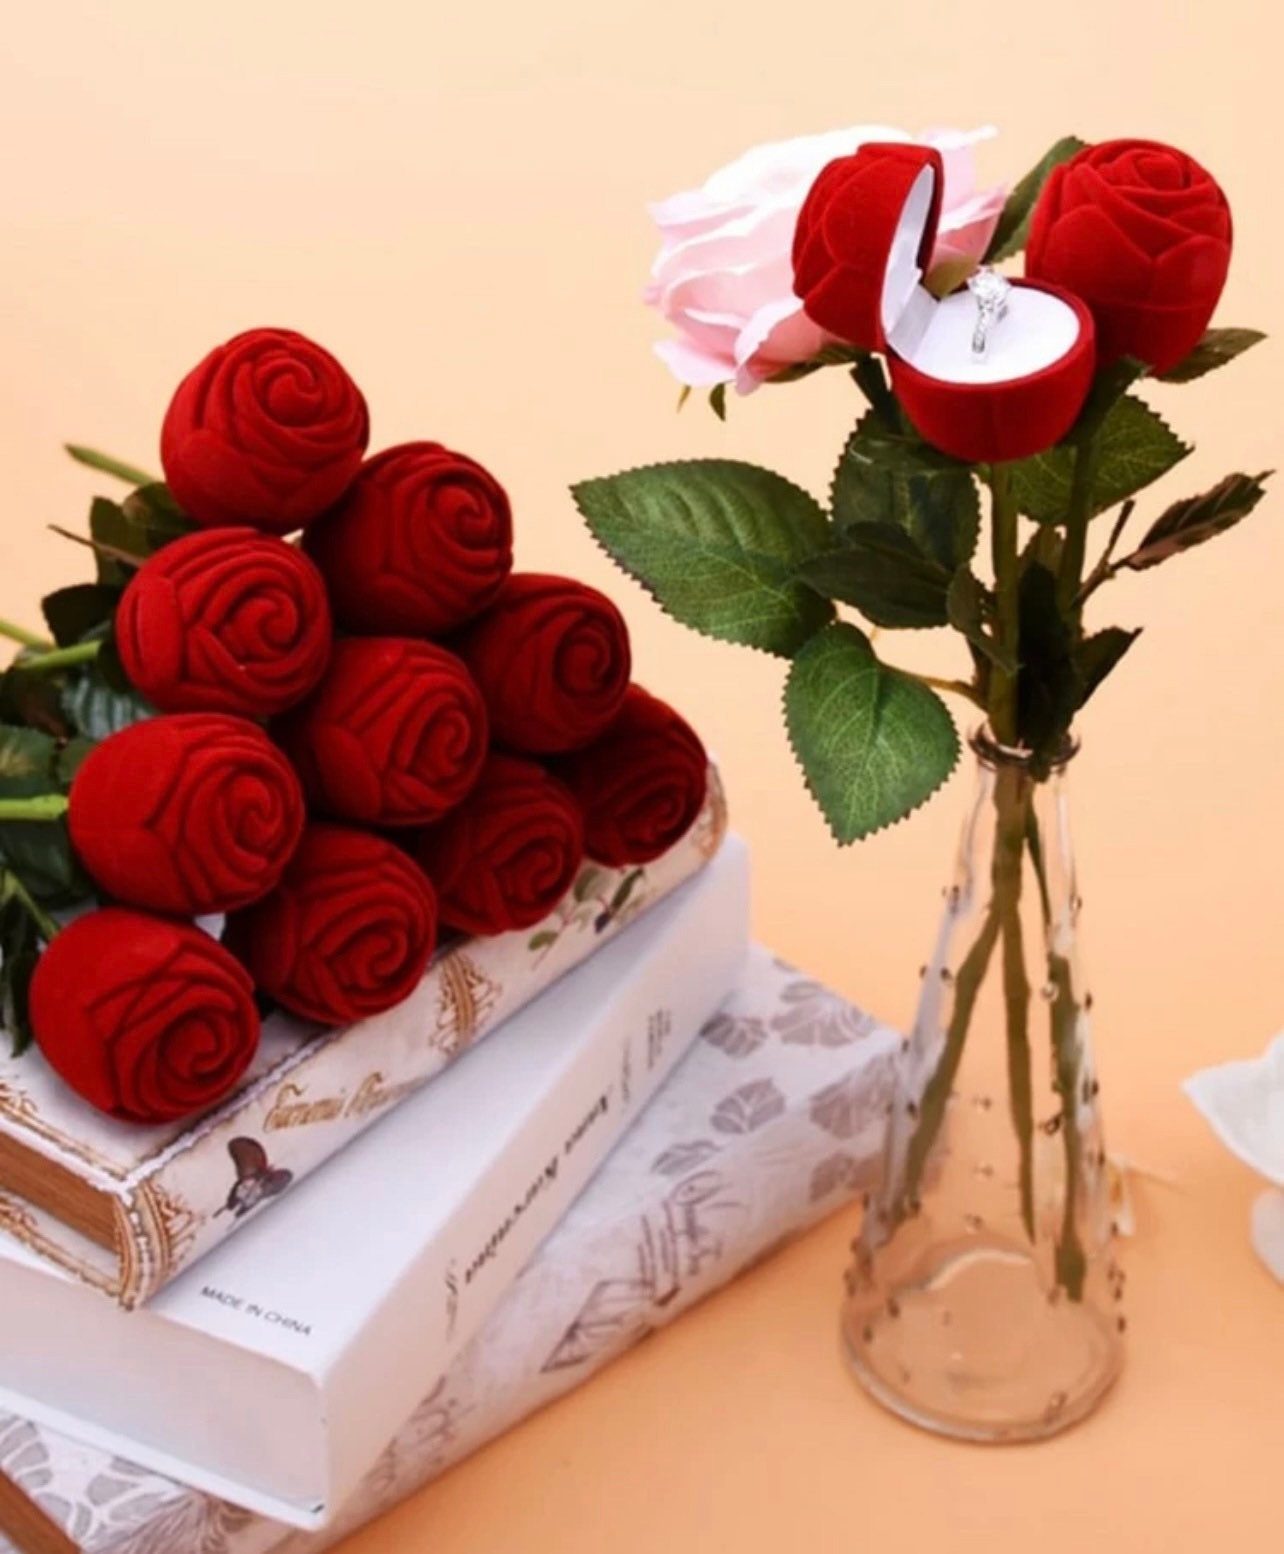 Stunning velvet red rose on Stem Jewelry gift box